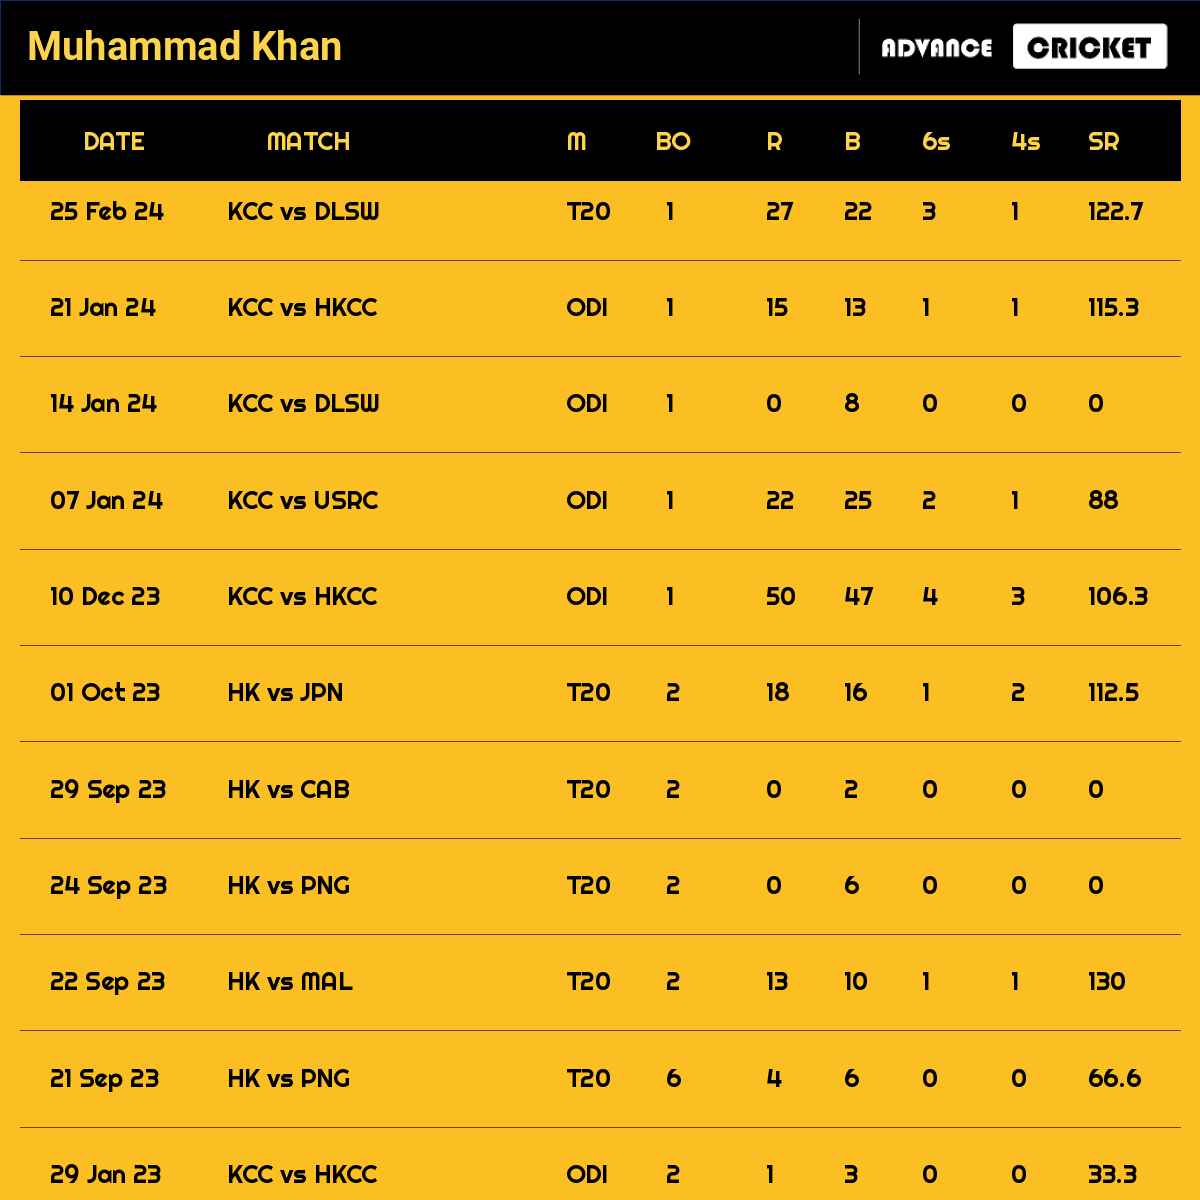 Muhammad Khan recent matches